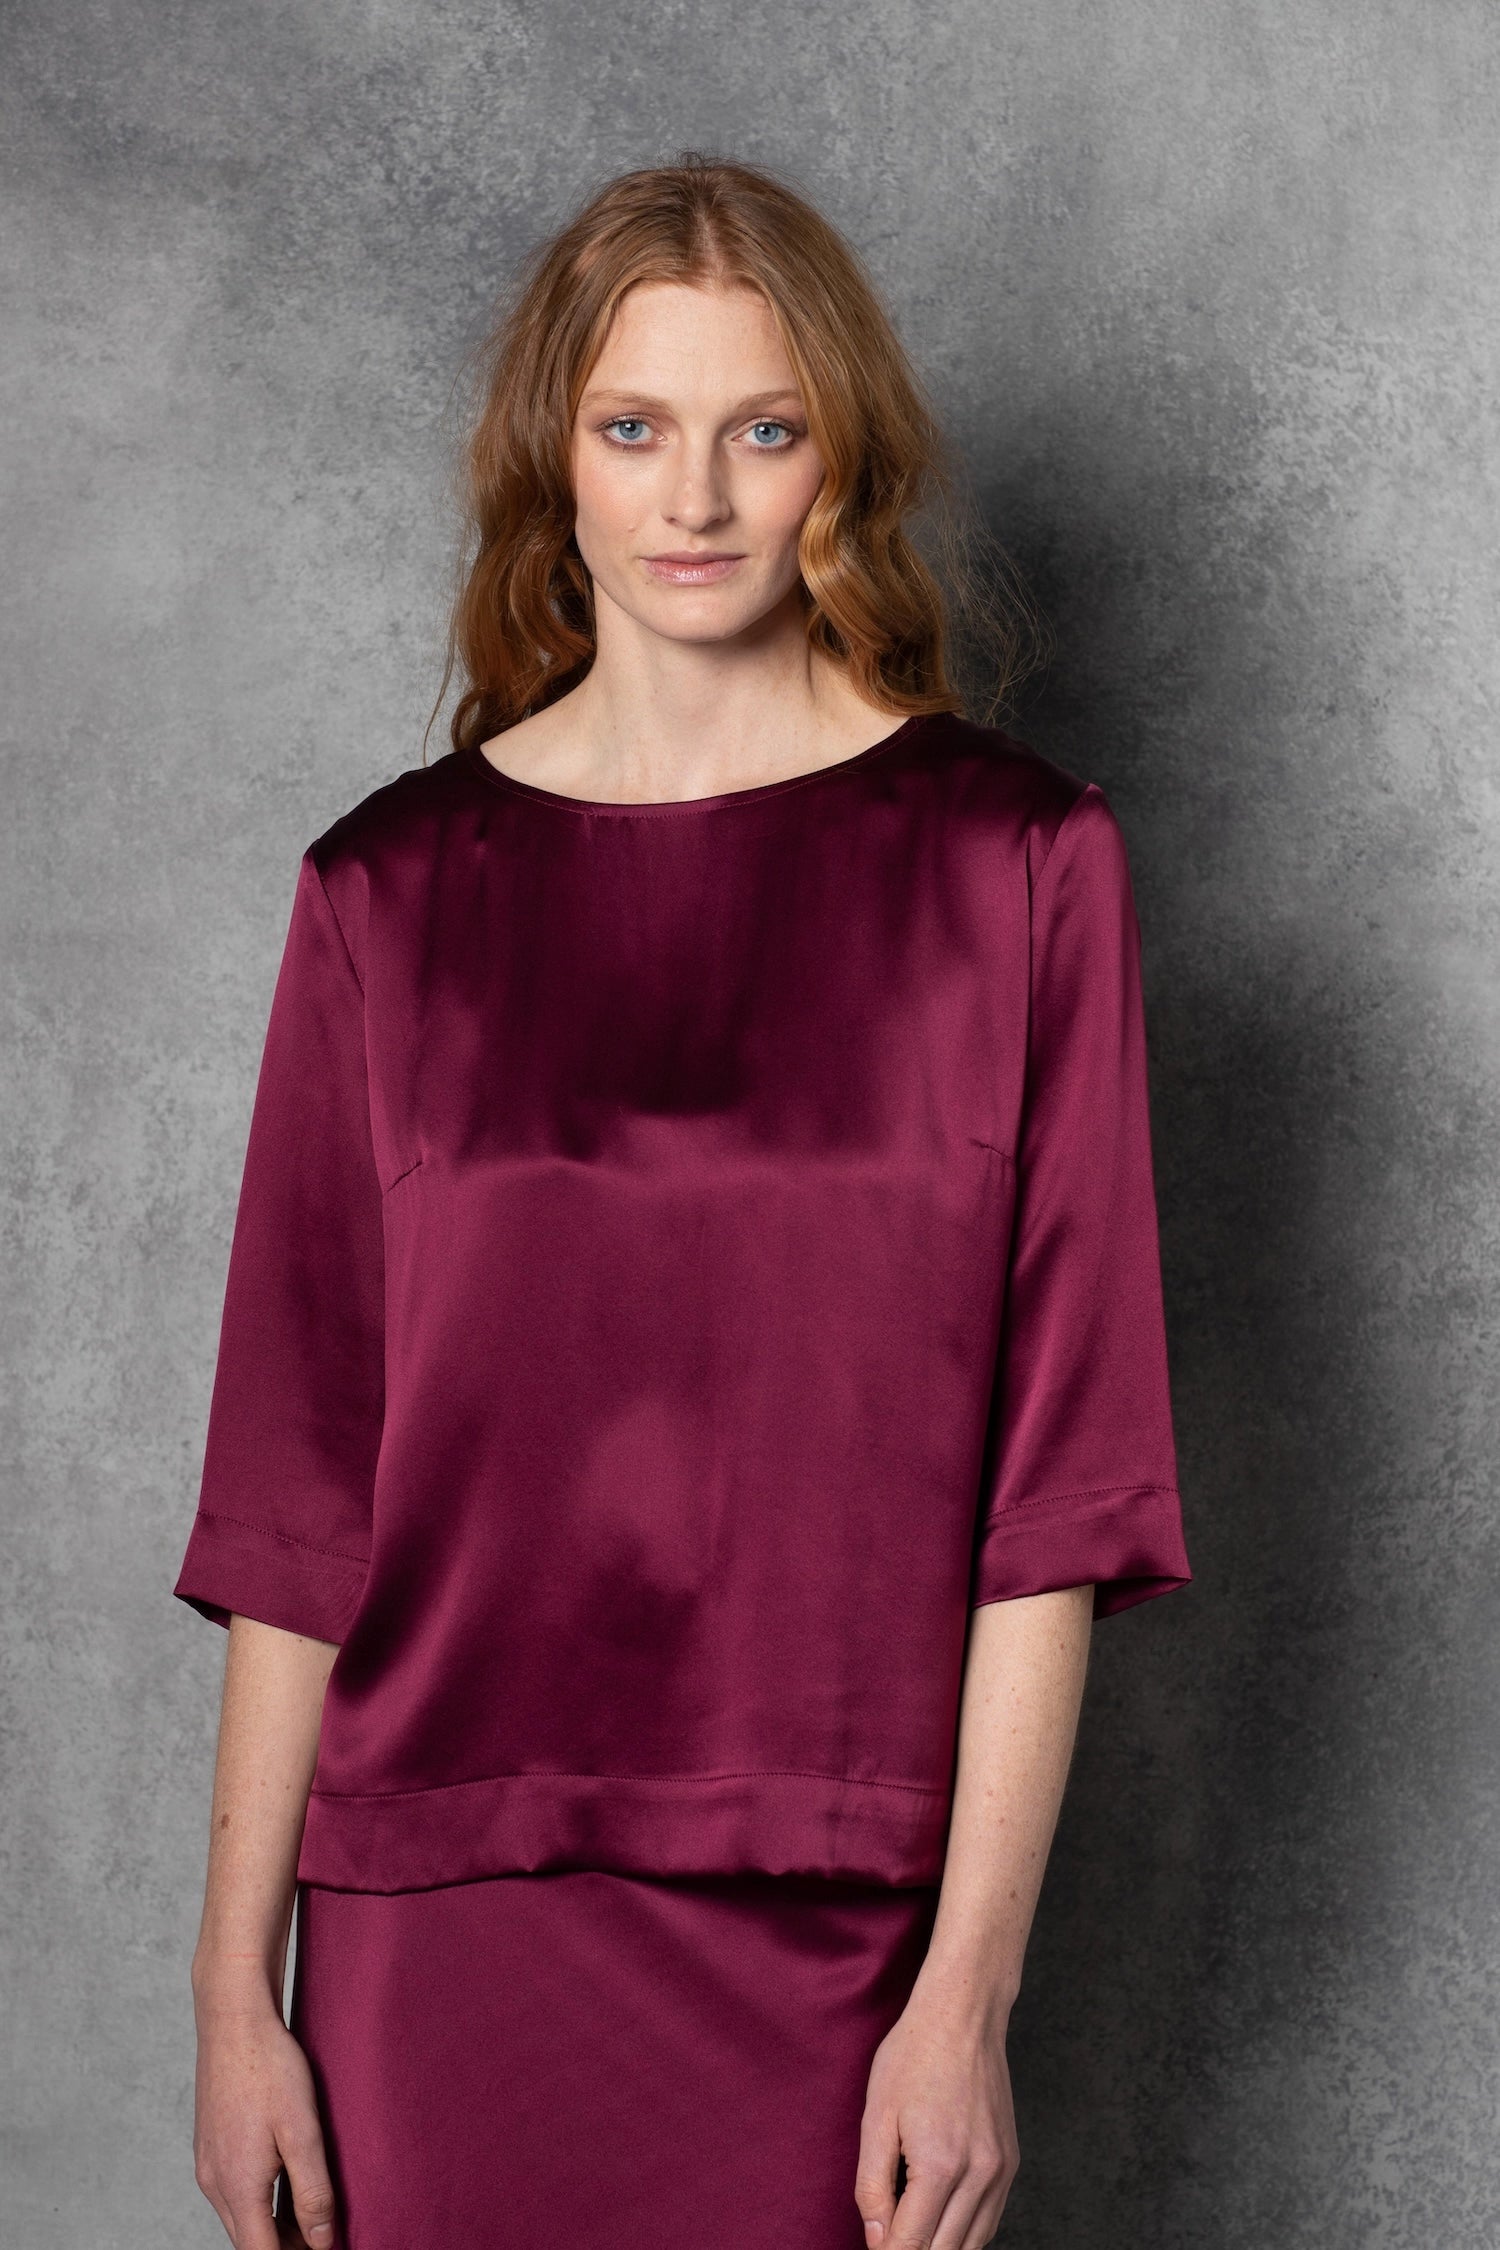 Long Sleeve luxury Silk Top in maroon